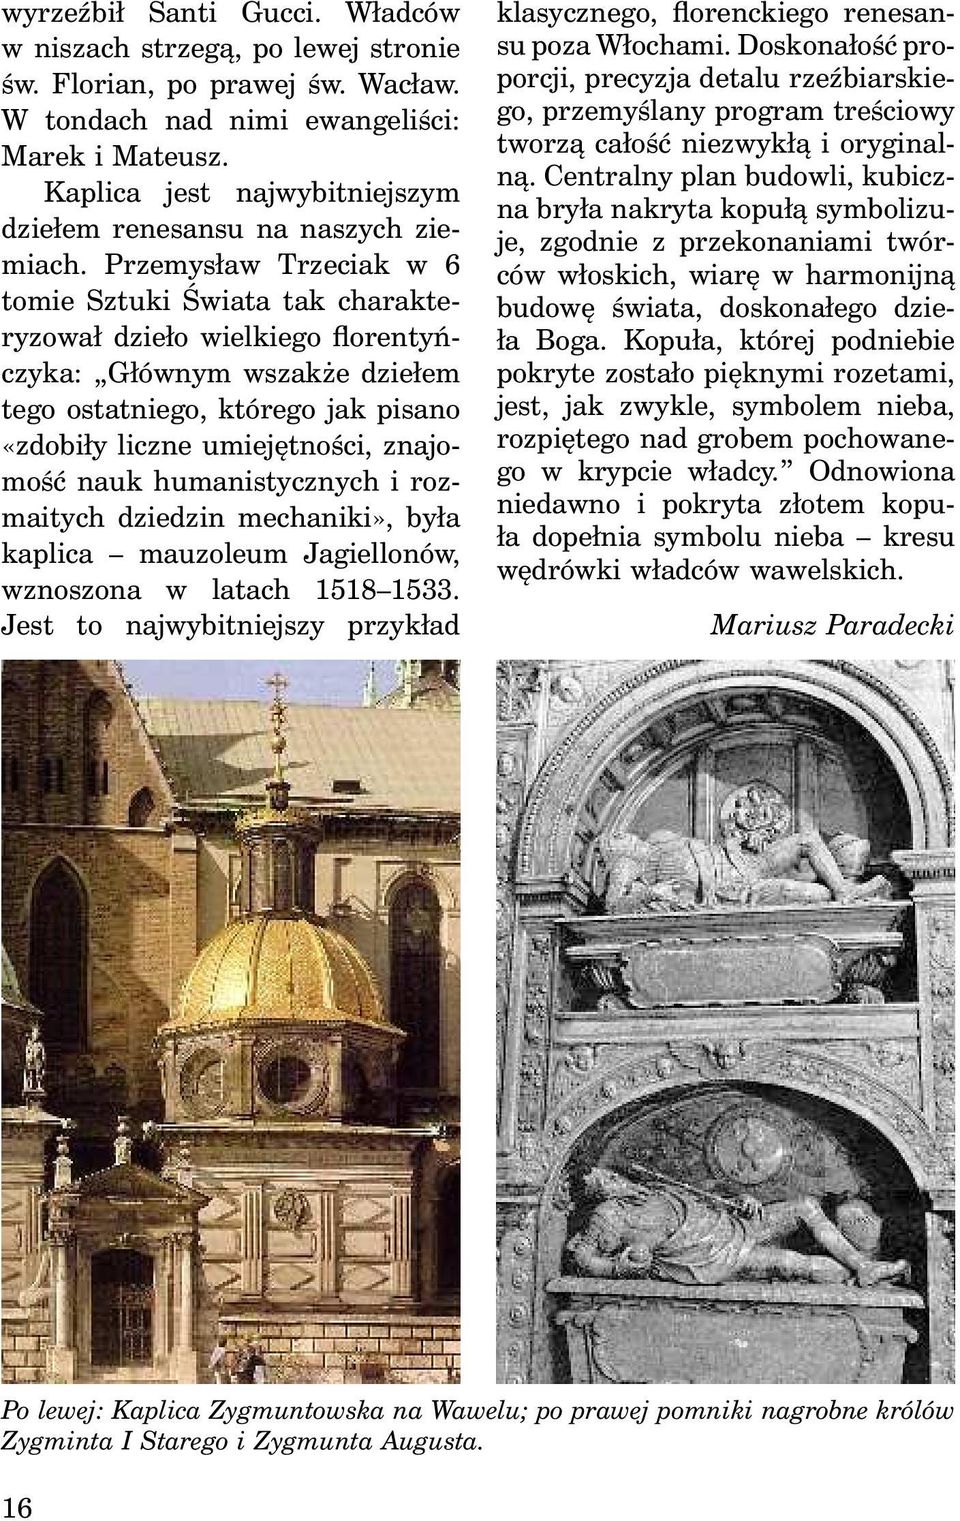 Przemysław Trzeciak w 6 tomie Sztuki Świata tak charakteryzował dzieło wielkiego florentyńczyka: Głównym wszakże dziełem tego ostatniego, którego jak pisano «zdobiły liczne umiejętności, znajomość